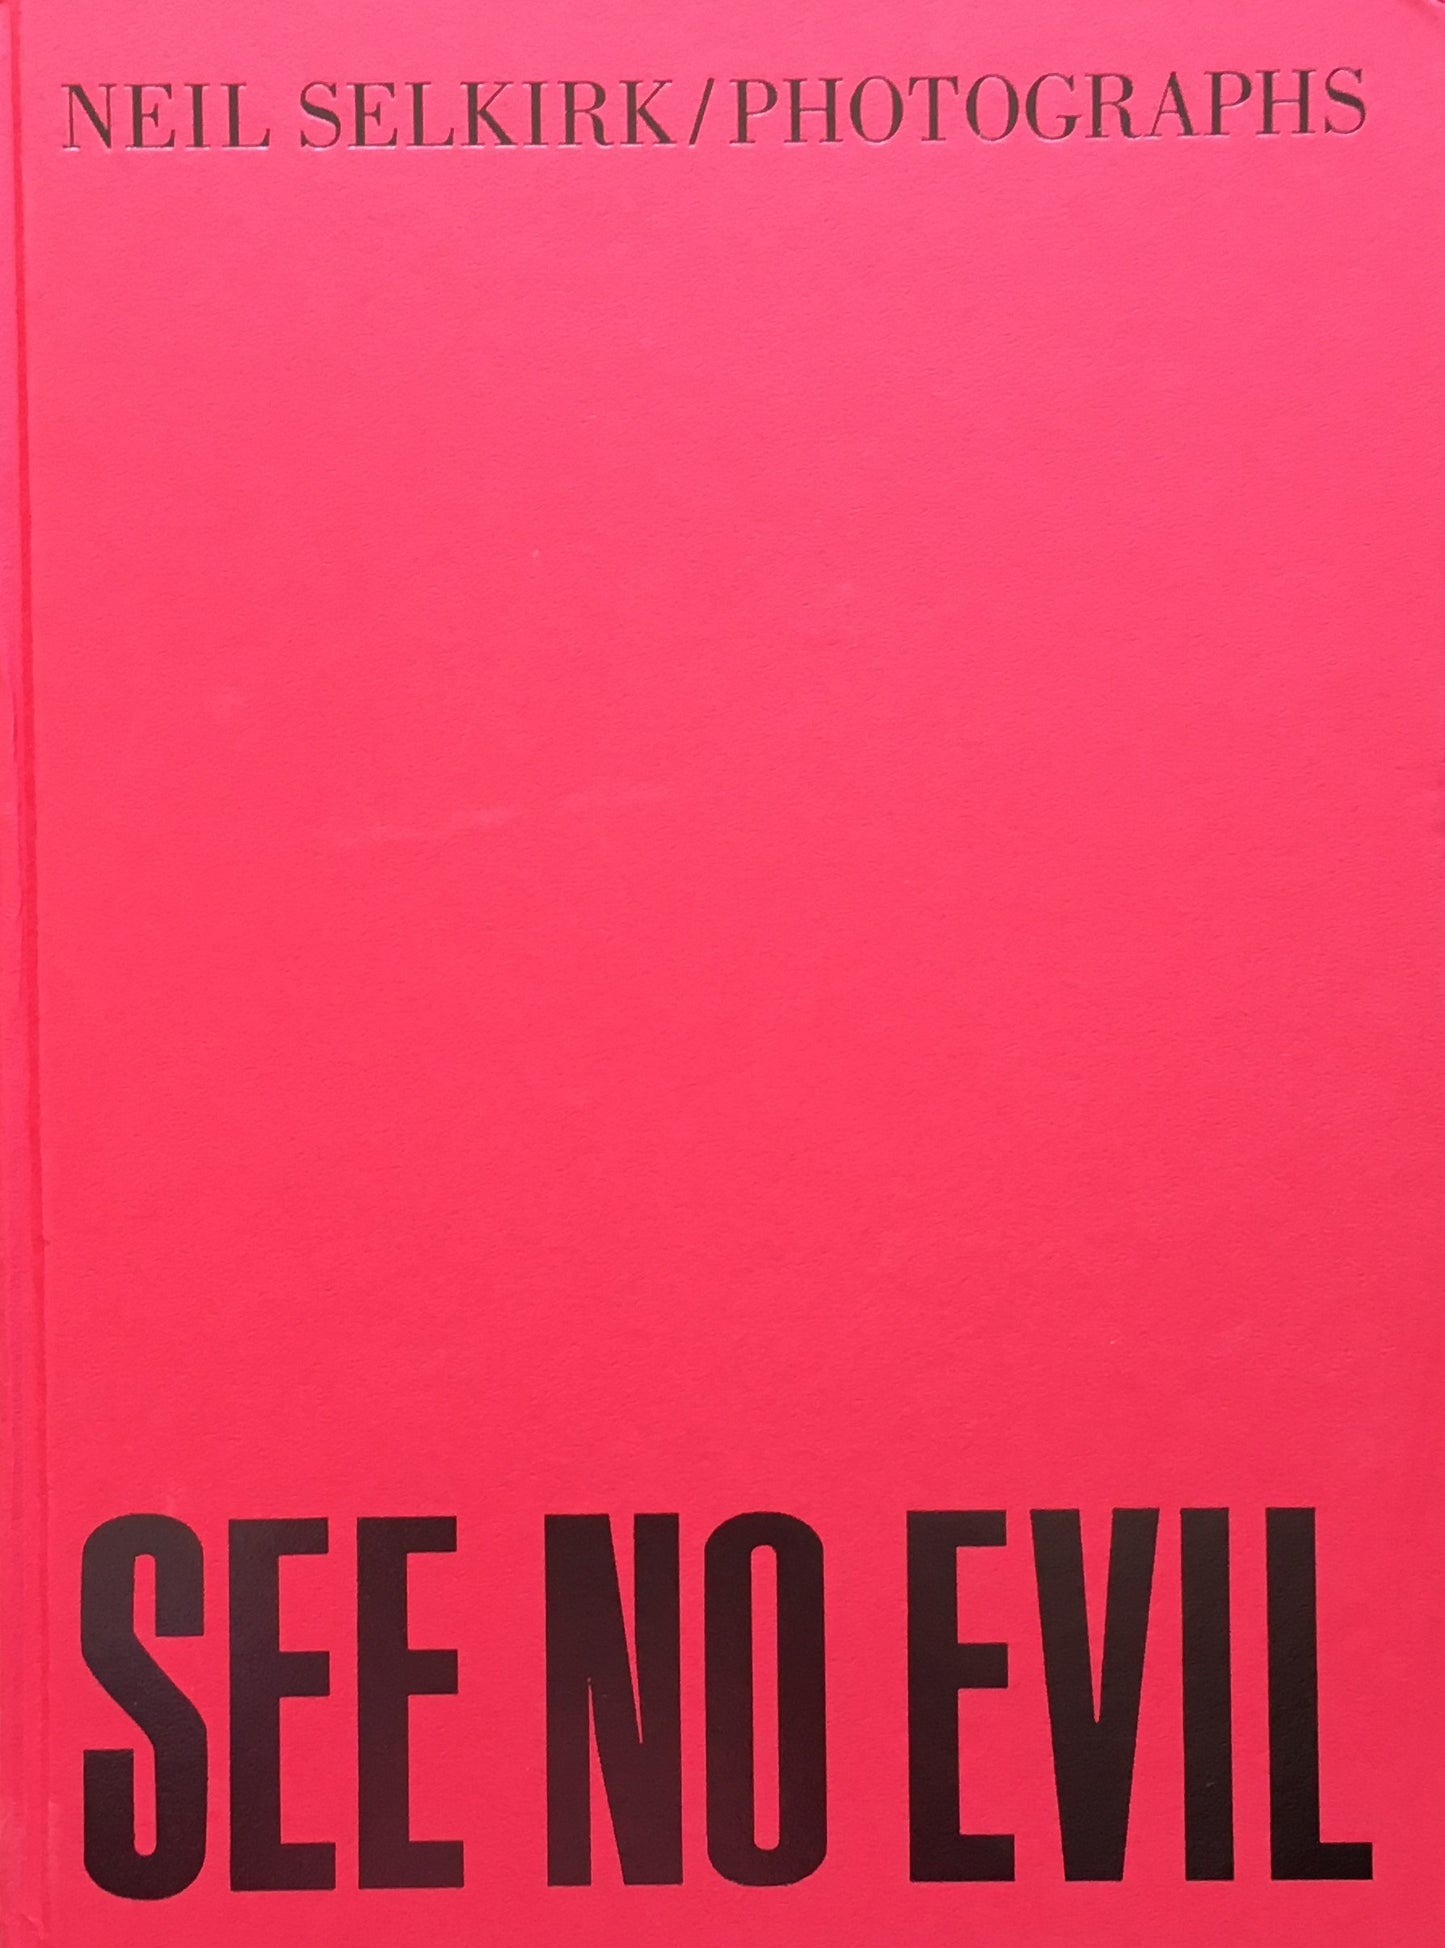 See No Evil　Neil Selkirk　ニール・セルカーク写真集